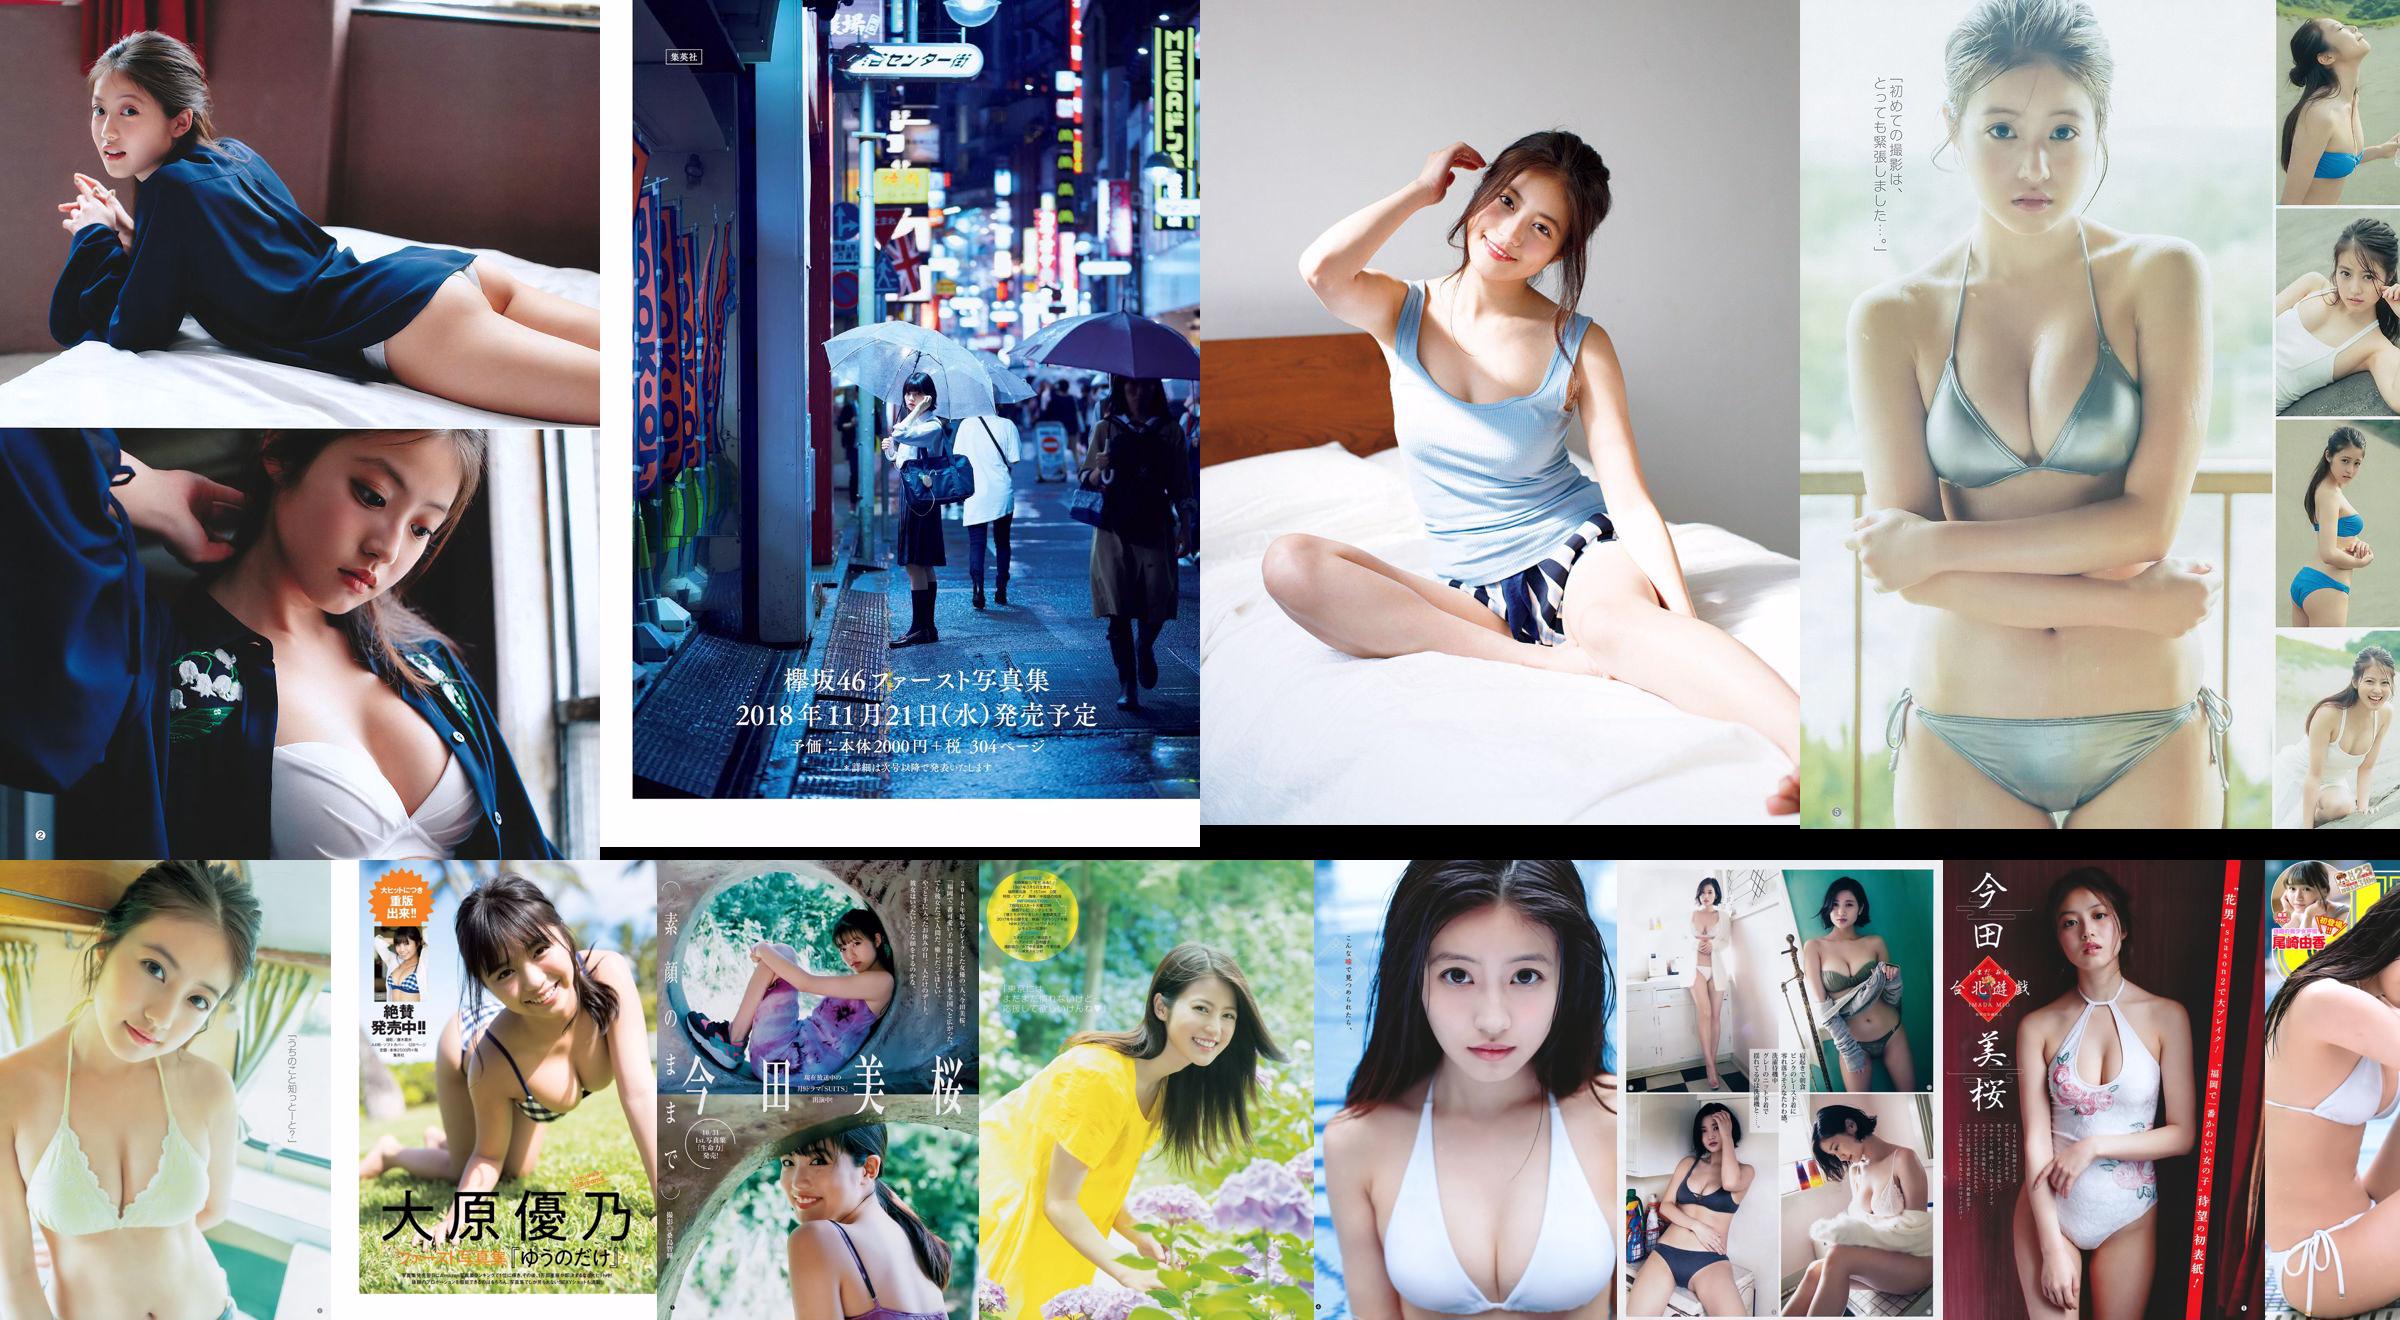 Imada Misakura Sekine Yona exportou Arisha [Weekly Young Jump] No. 48 Photo Magazine em 2018 No.e677ca Página 1